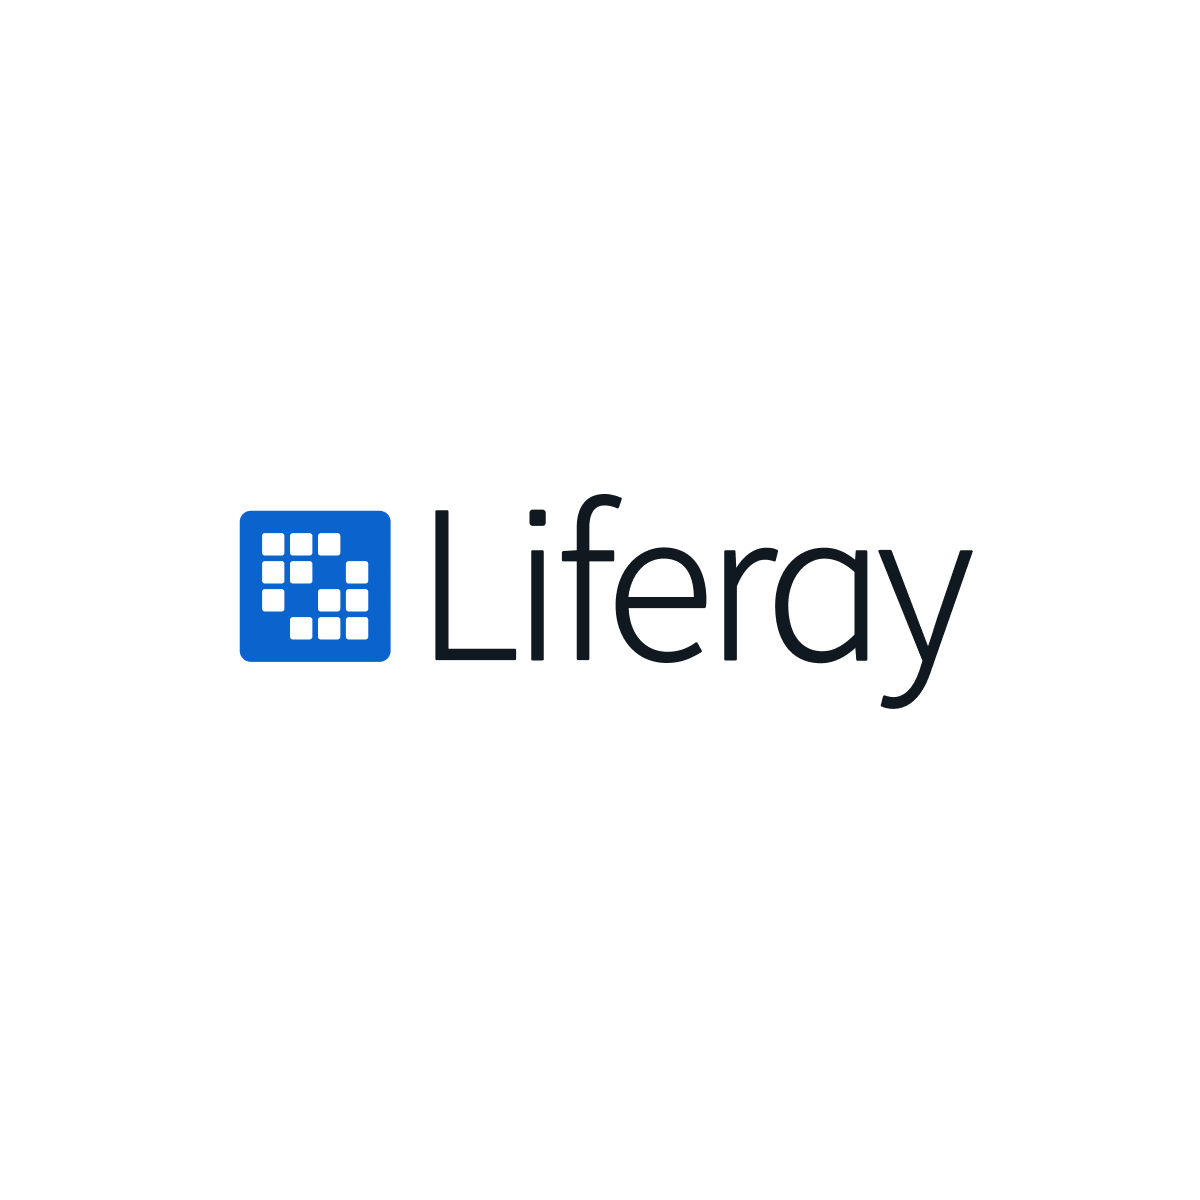 www.liferay.com